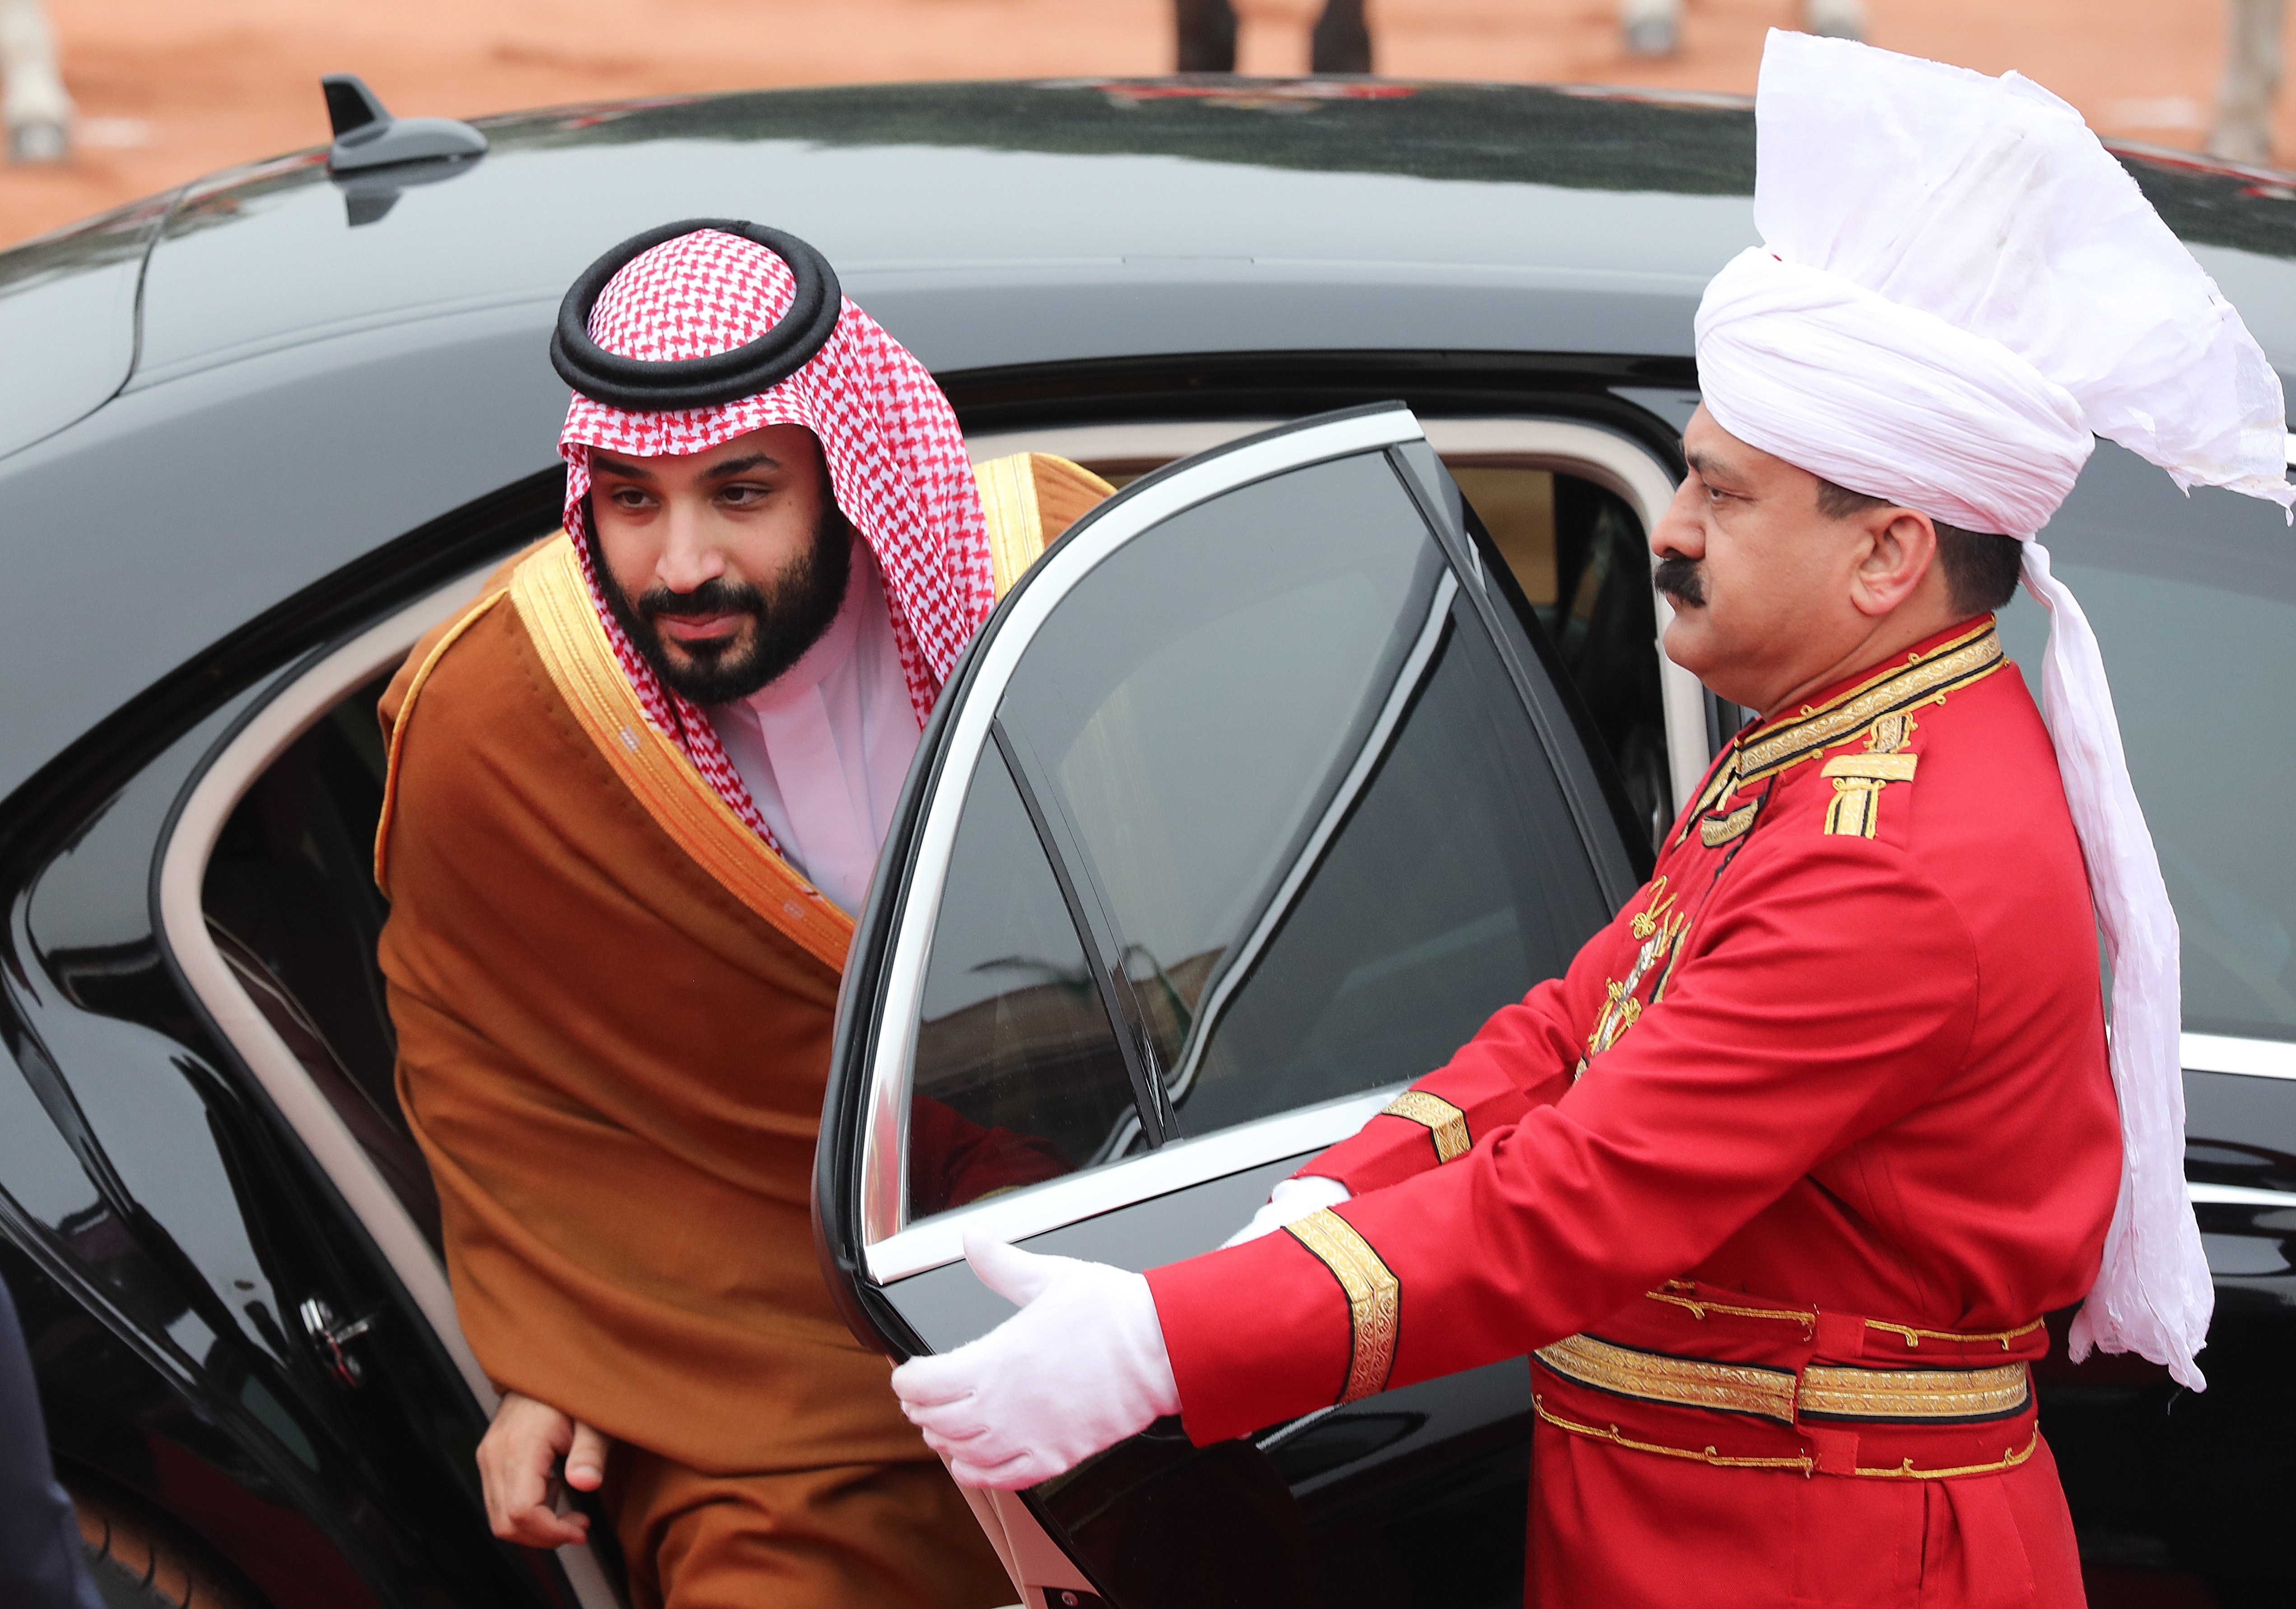 El príncipe Mohammed Bin Salman Bin Abdulaziz Al-Saud tiene gustos lujosos. Su mayor ostentación es el cuadro más caro de la historia, el “Salvatore Mundi”, de Leonardo Da Vinci, que adquirió en 389 millones de euros y lo trasladó a su yate